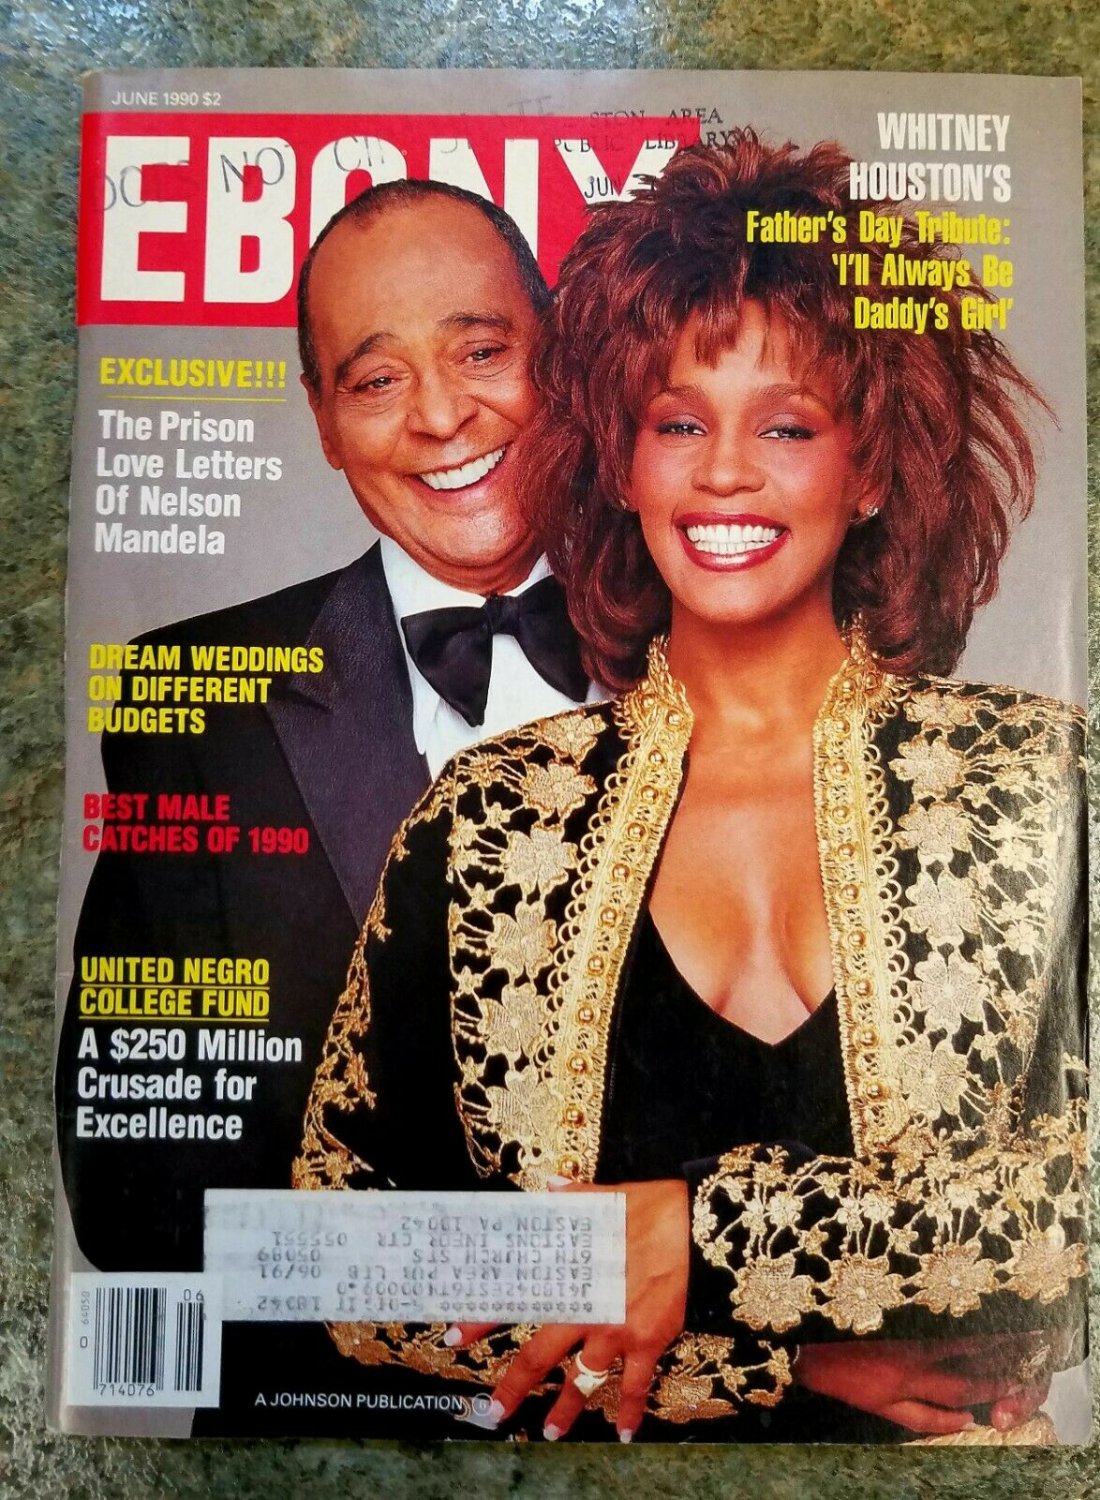 EBONY MAGAZINE JUNE 1990 ISSUE - Whitney Houston Cover.